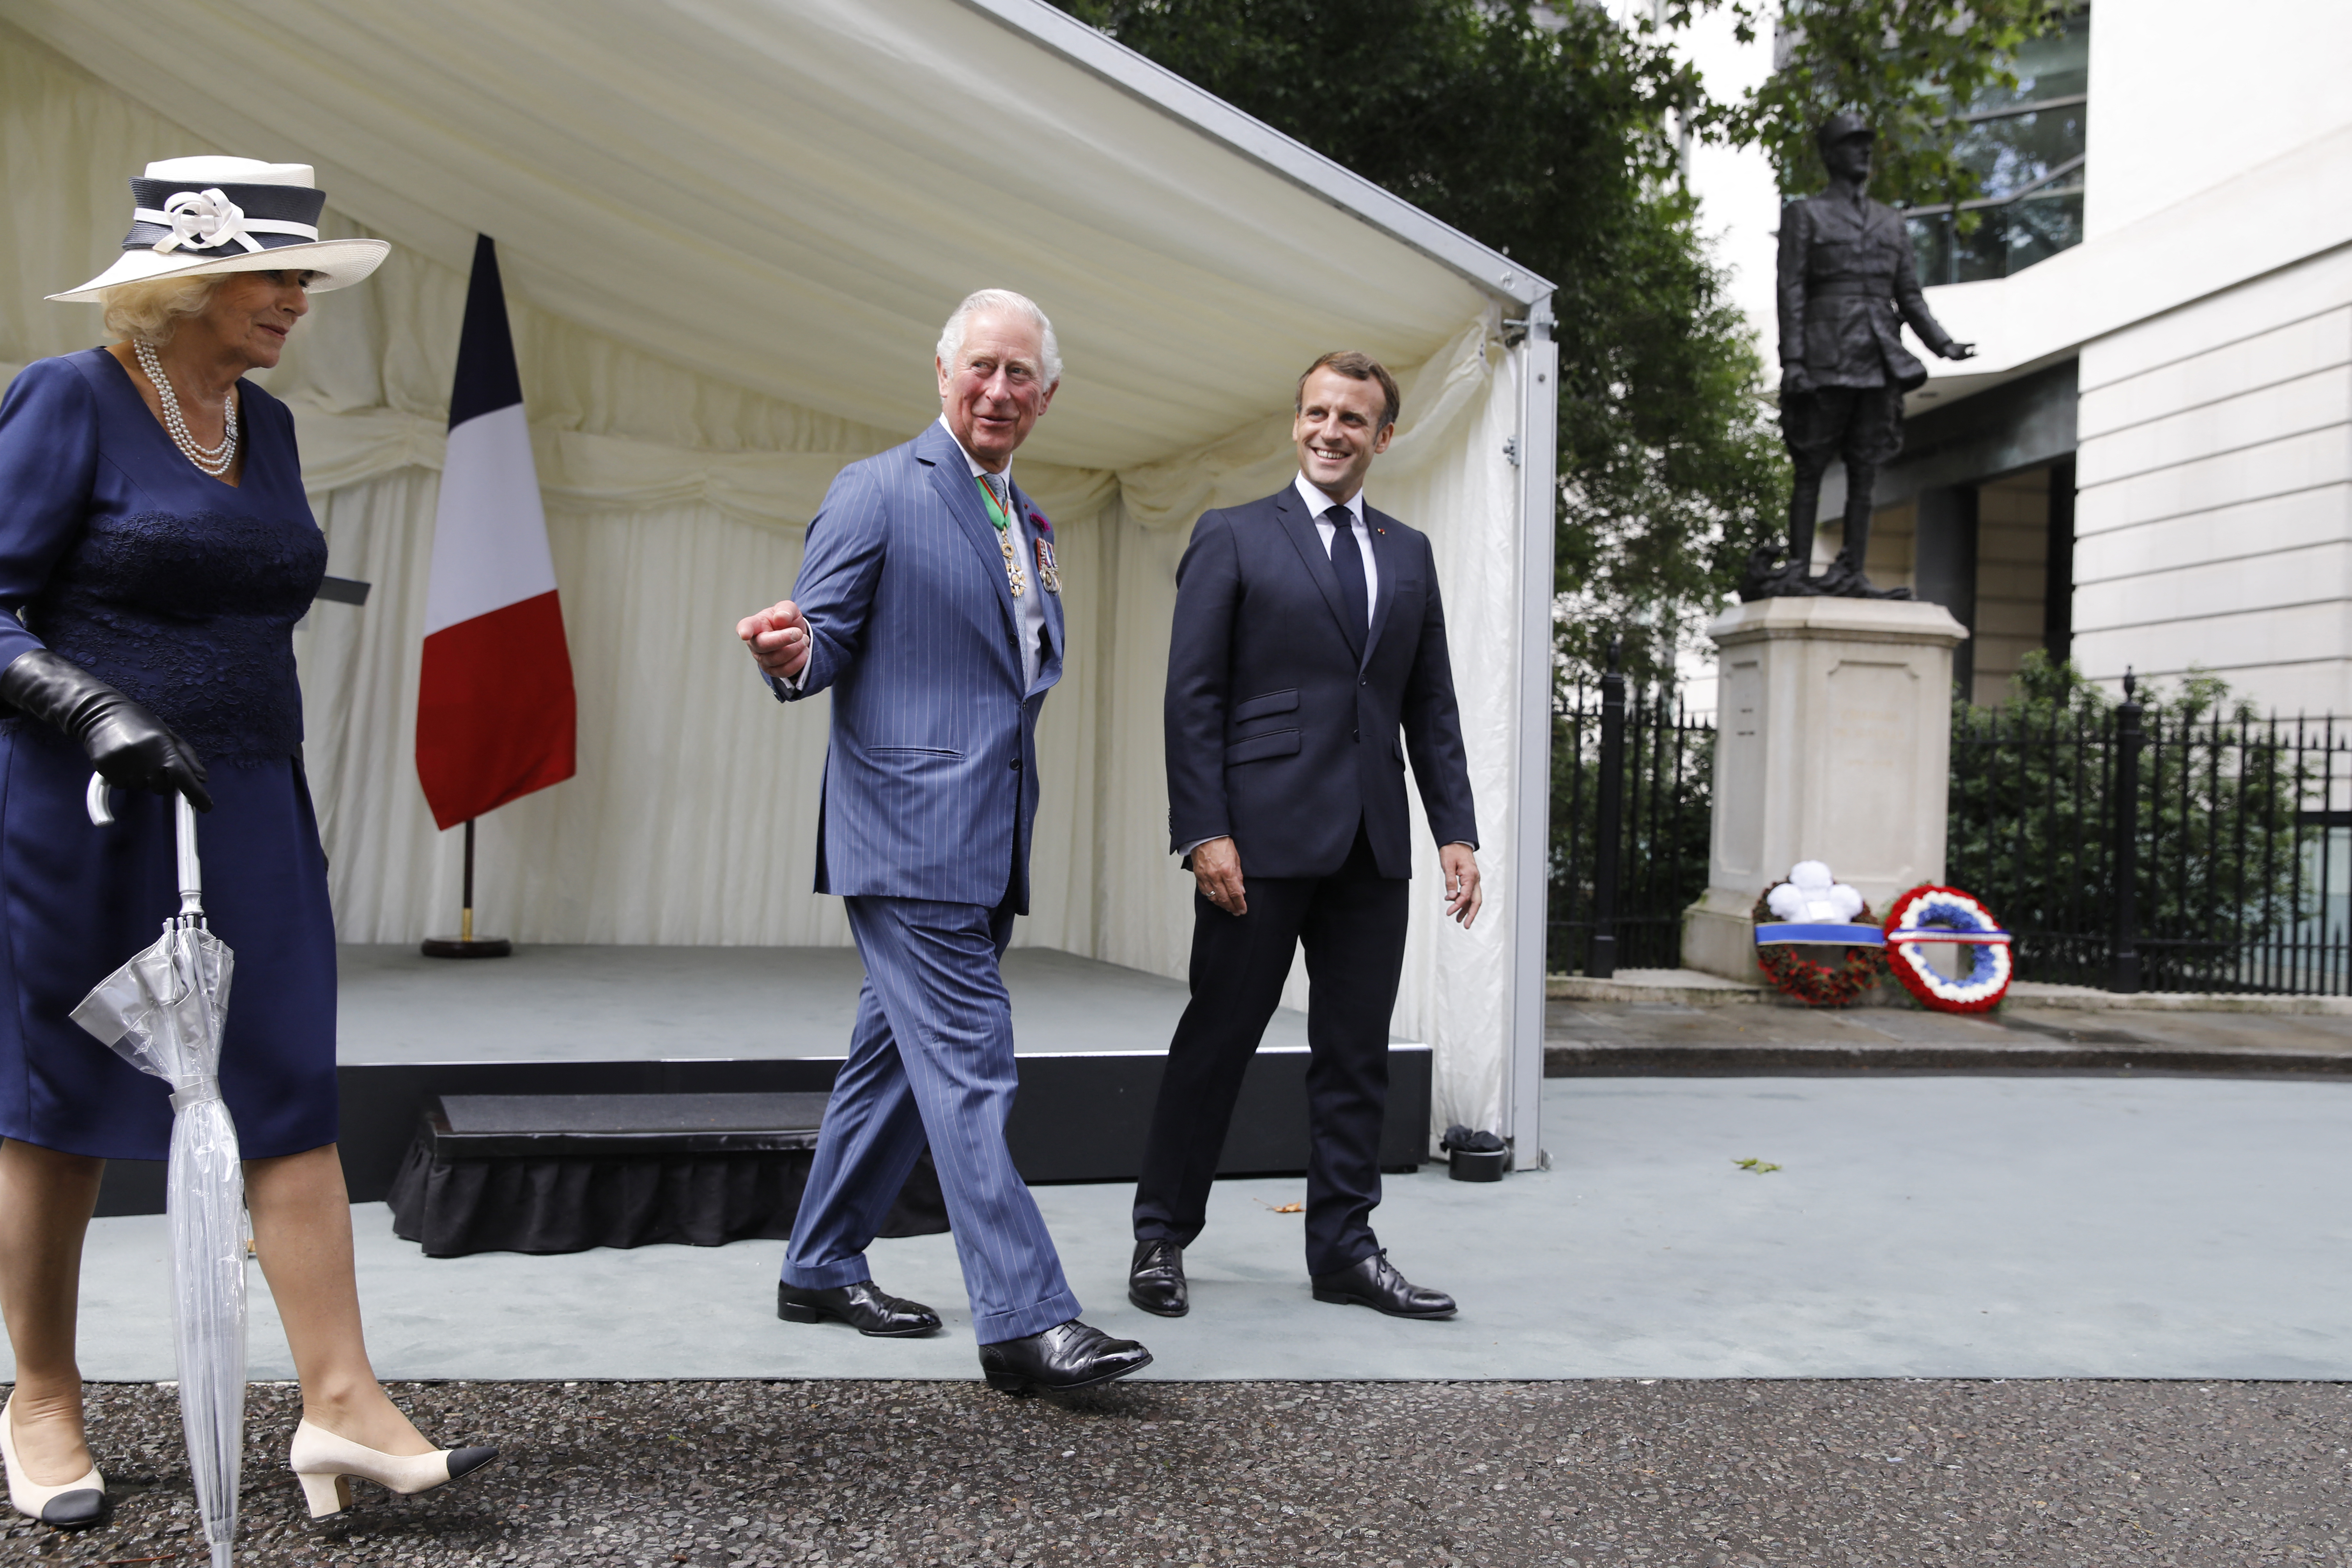 Camilla et Charles, alors encore prince de Galles, avec Emmanuel Macron, le 18 juin 2020 à Londres. Des liens « d’amitié et de confiance » unissent les deux hommes, note un conseiller de l'Elysée. AFP/Pool/Tolga Akmen